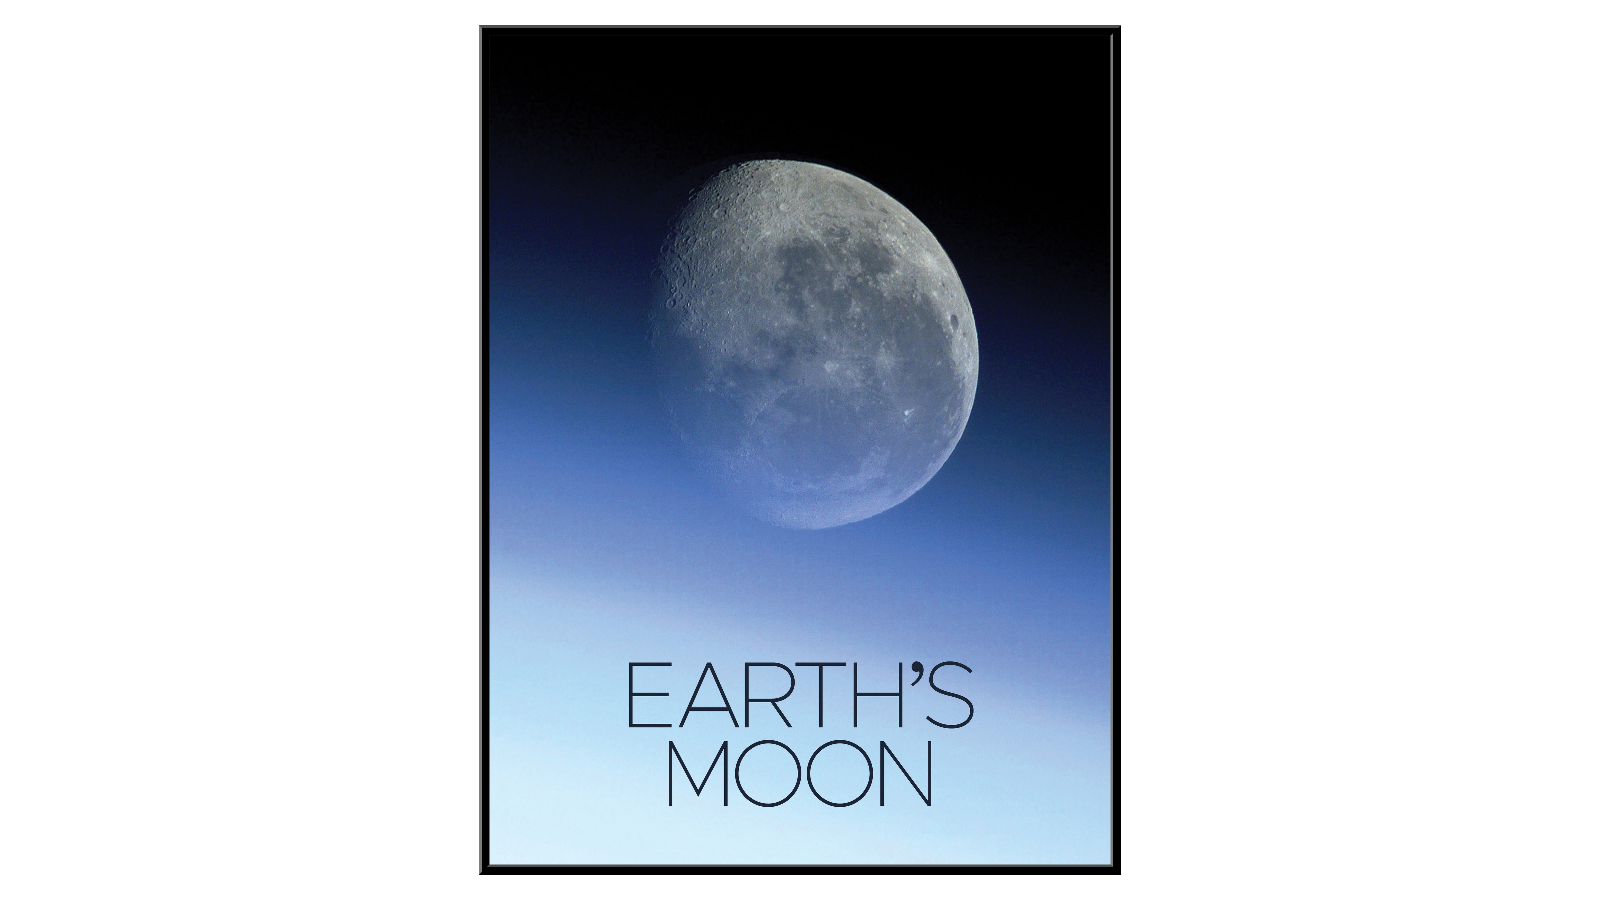 Earth's Moon - 2